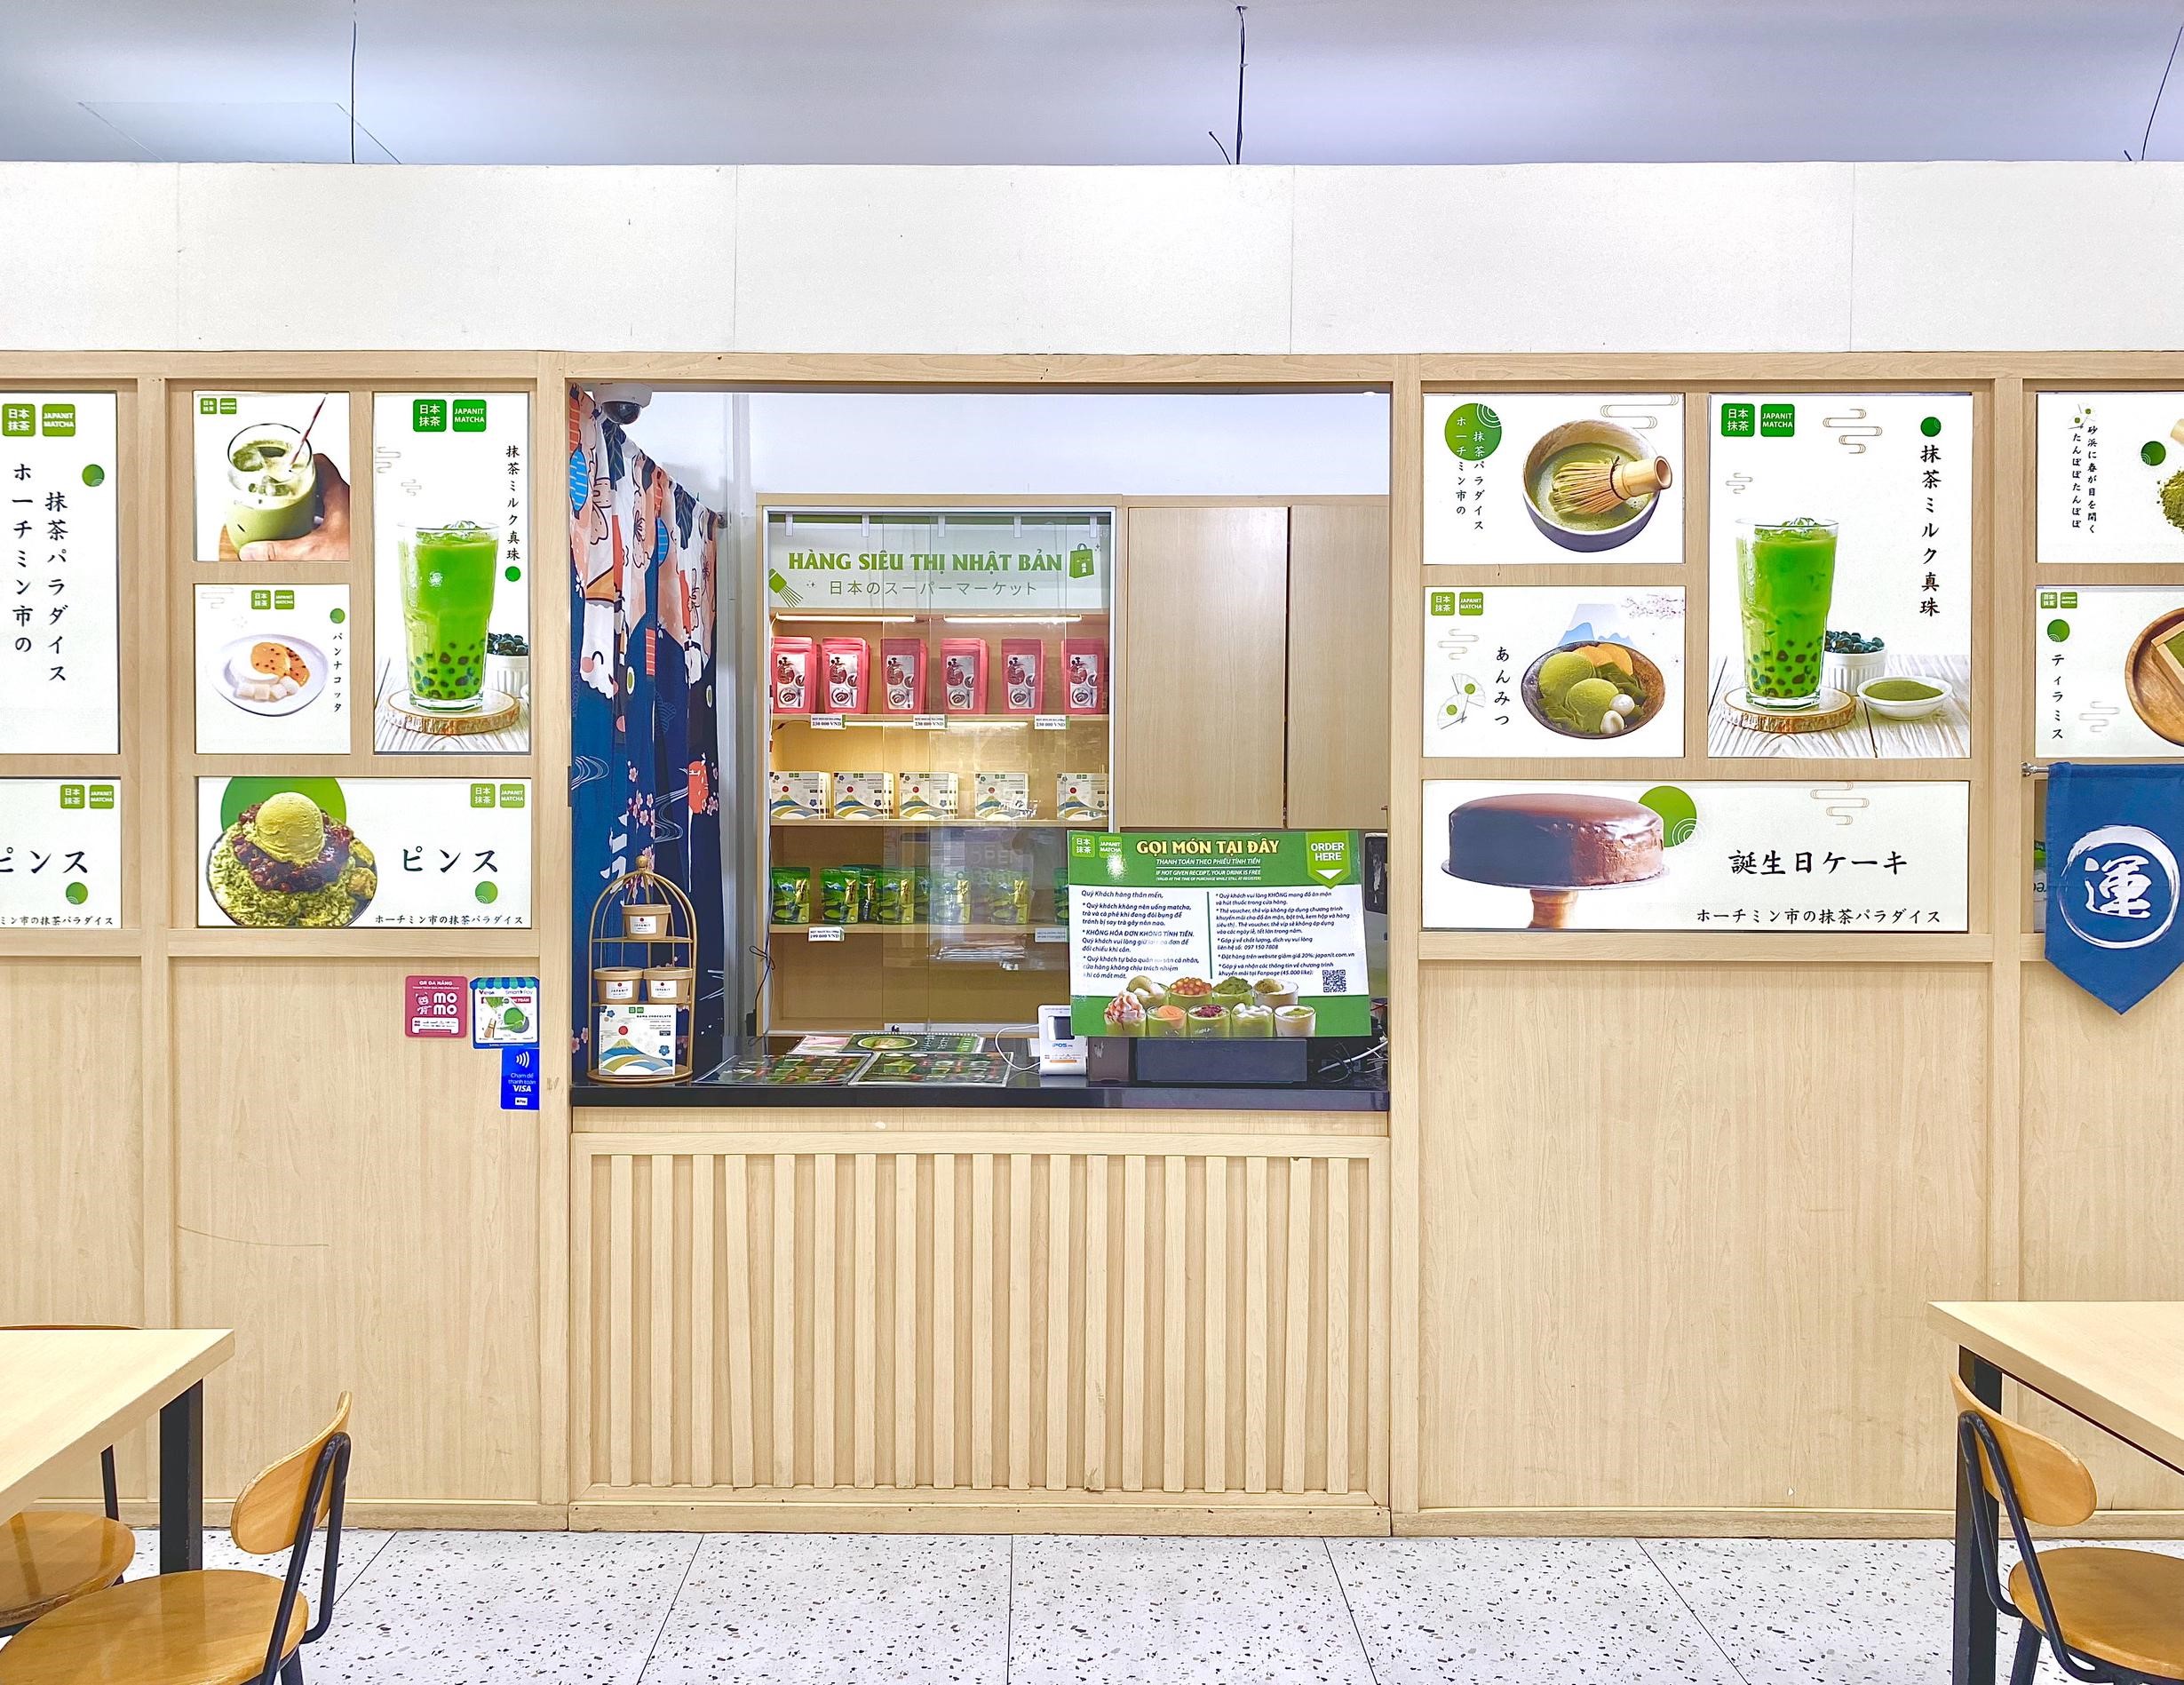 Japanit Matcha & Coffee House - lựa chọn cho người đam mê matcha- Ảnh 3.